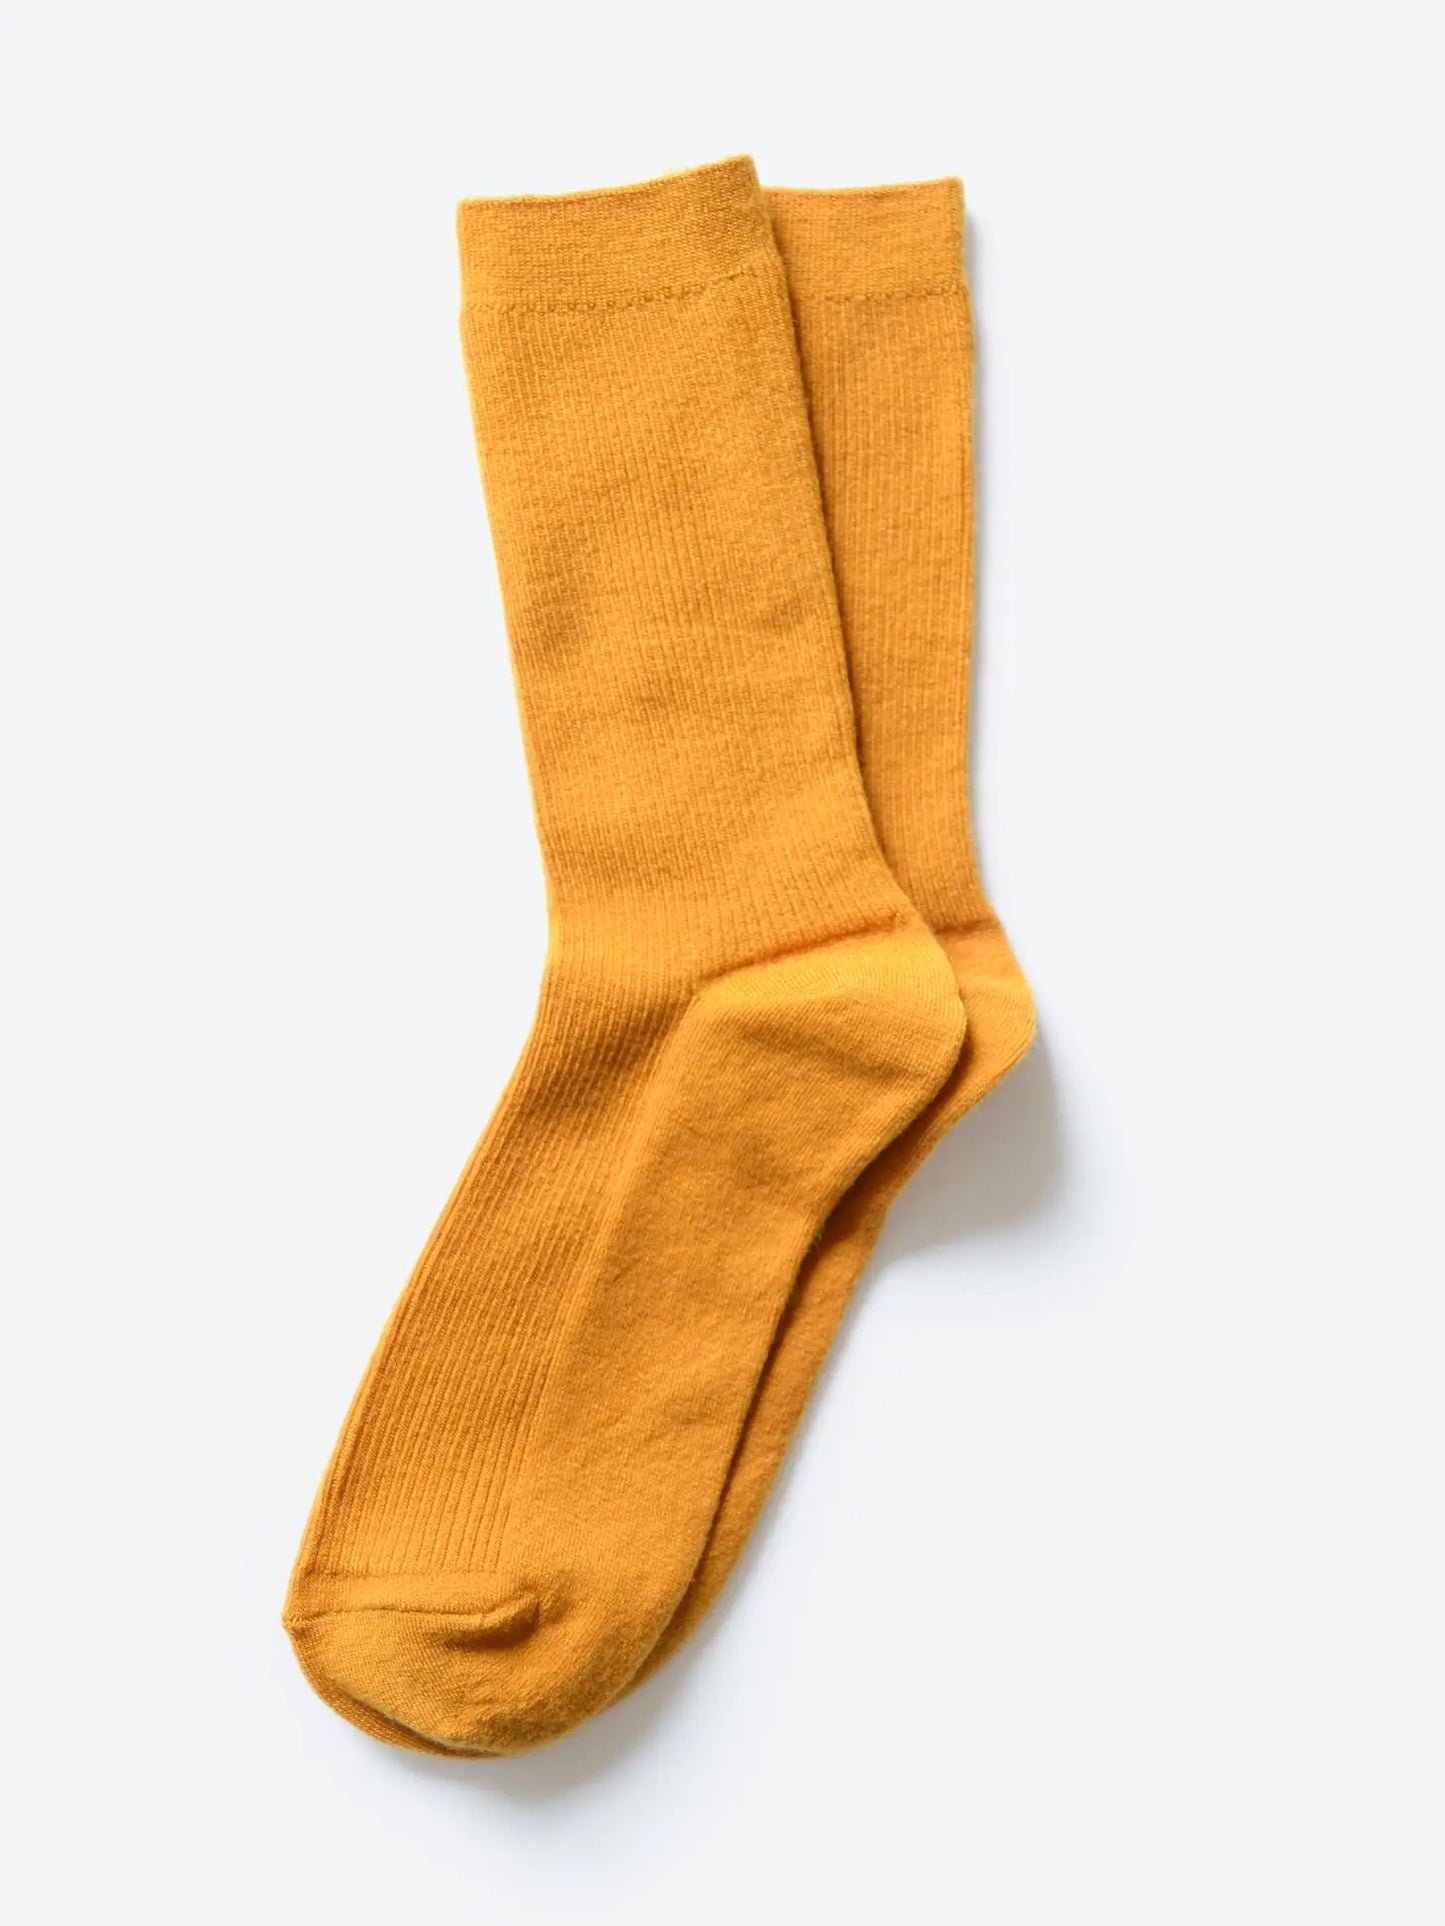 Goldenrod Socks - Merino Wool